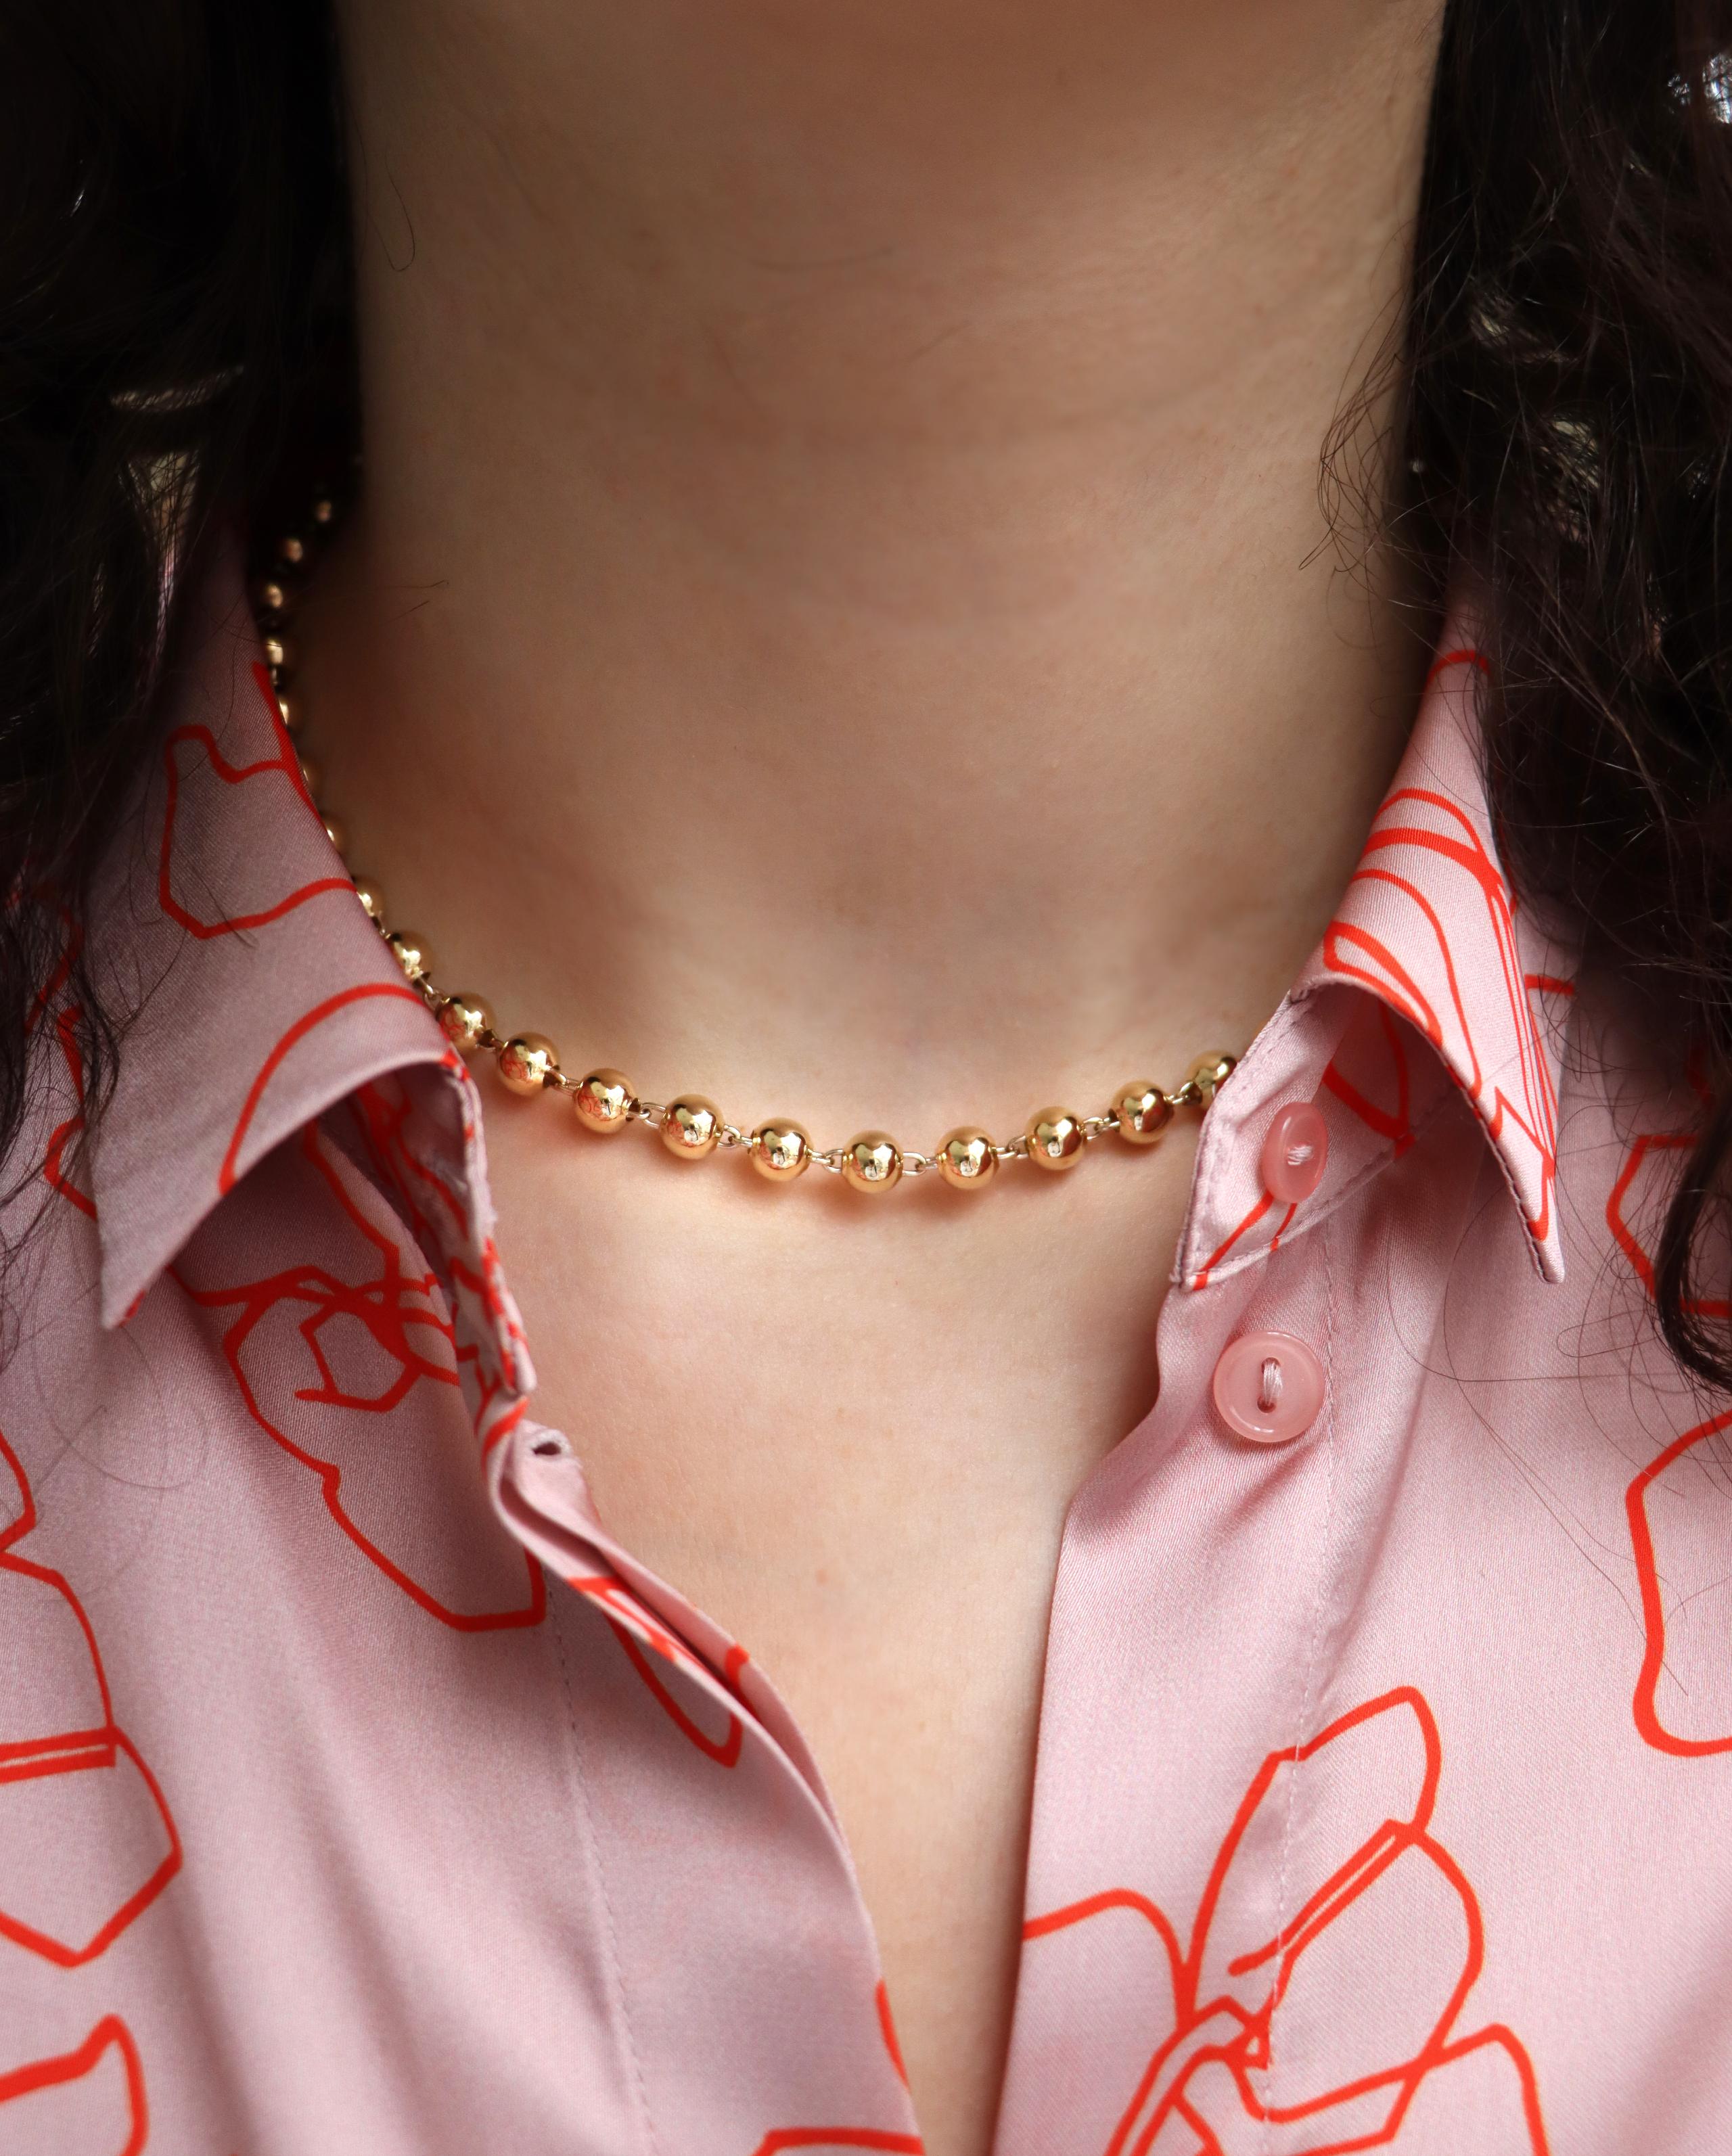 54cm necklace